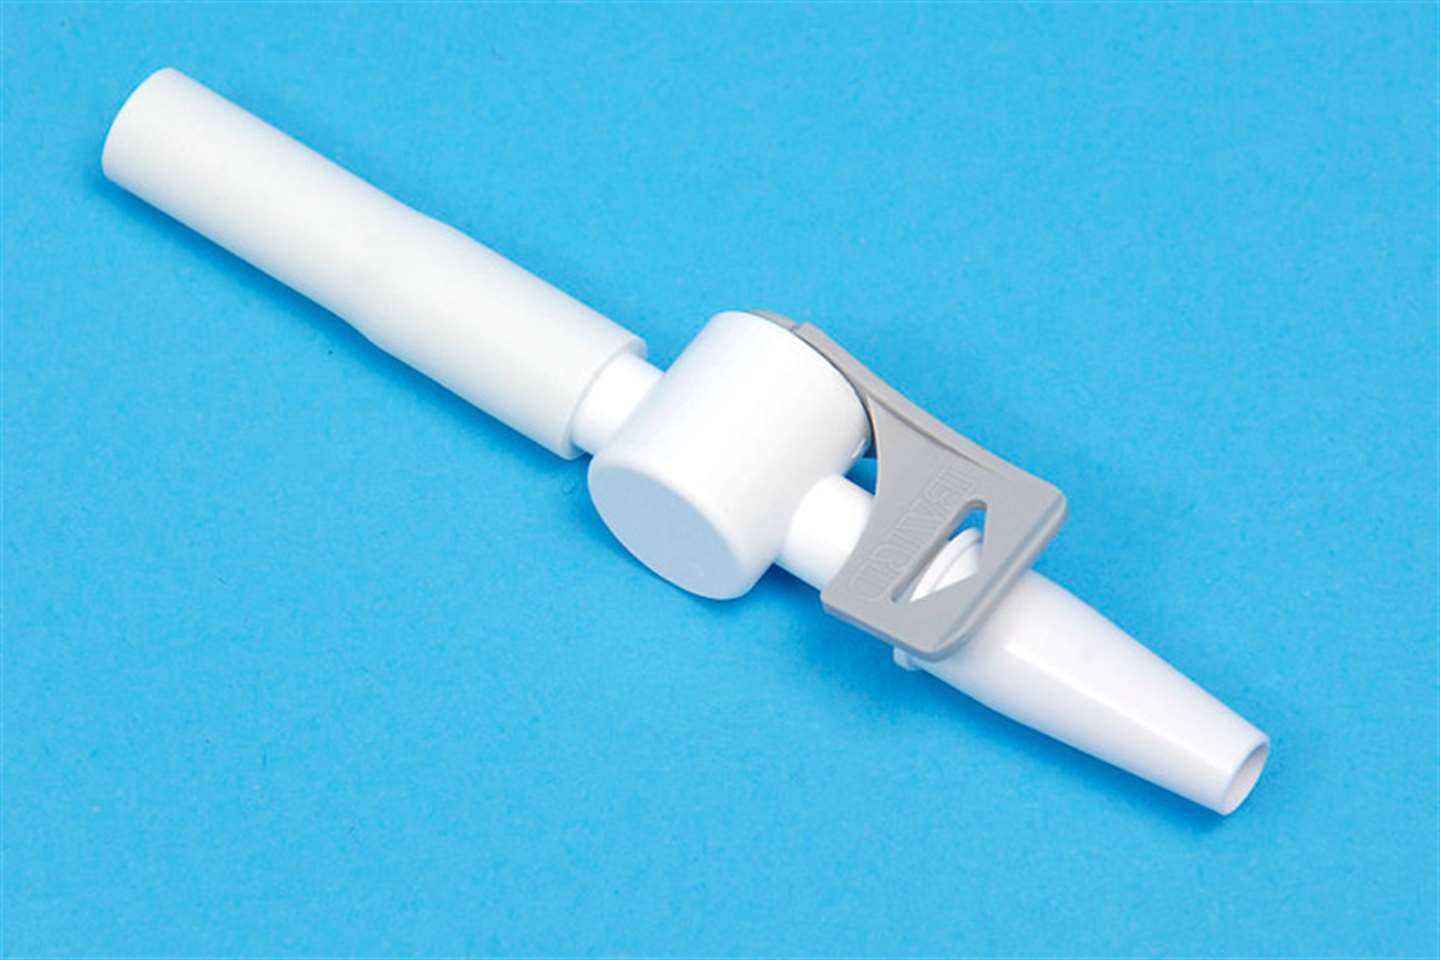 Flip-flo style catheter valve